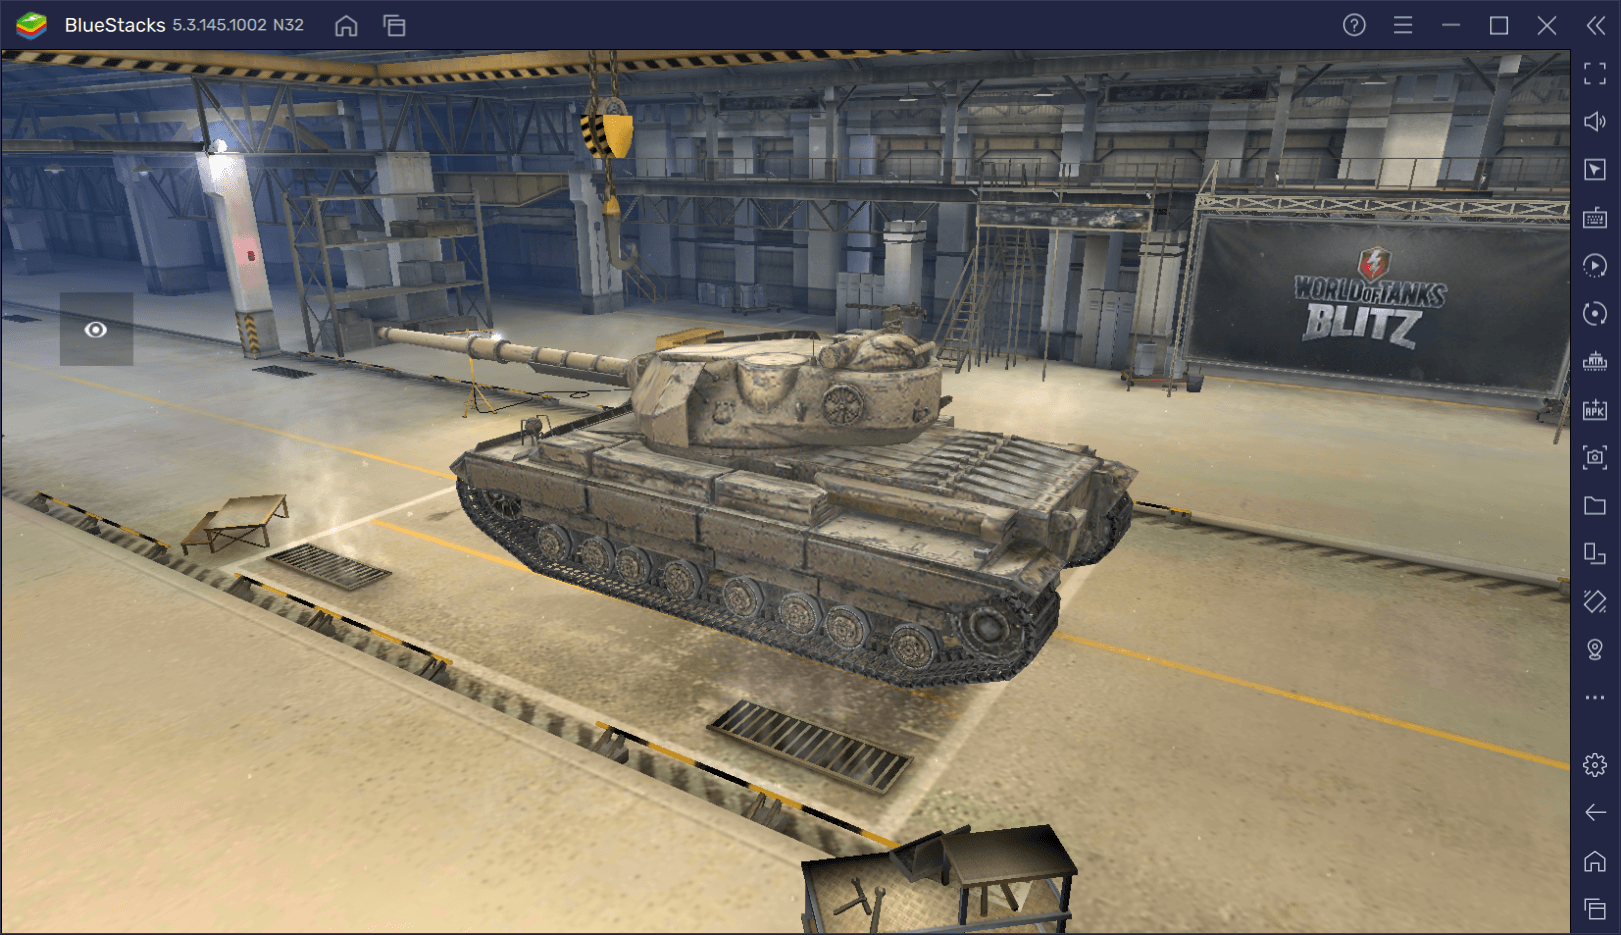 Гайд по коллекционному танку Super Conqueror в World of Tanks Blitz. Обзор параметров, достоинств и тактик игры